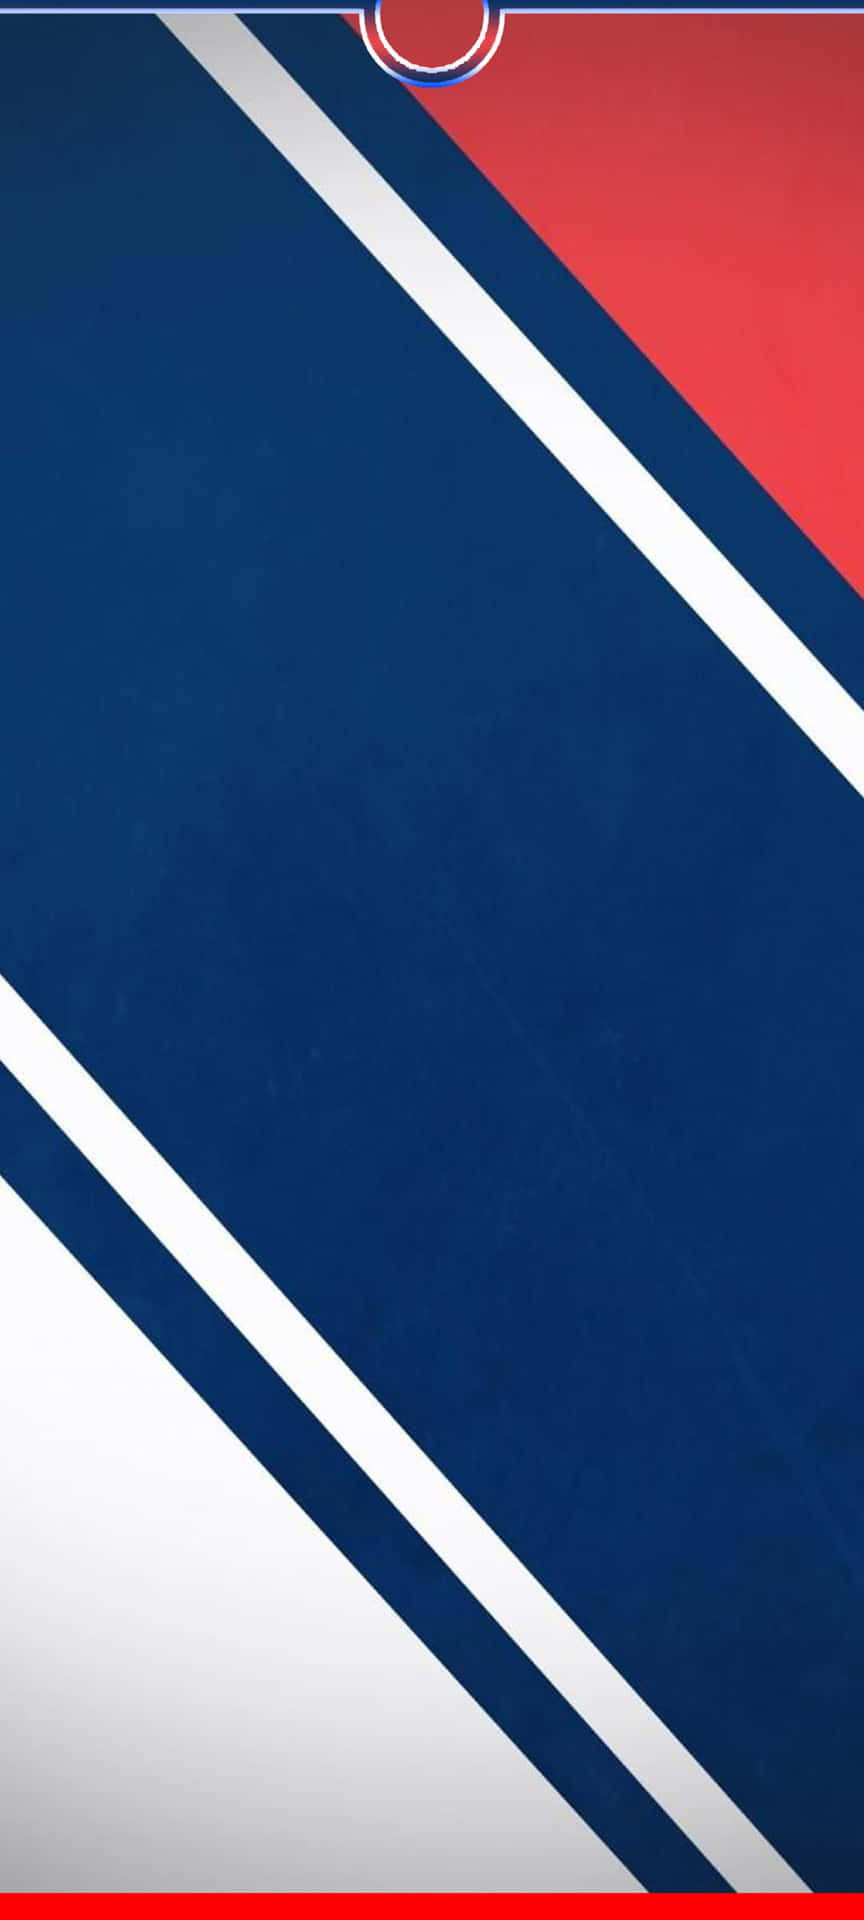 Det nye New York Rangers-logo vises på en blå og rød baggrund. Wallpaper